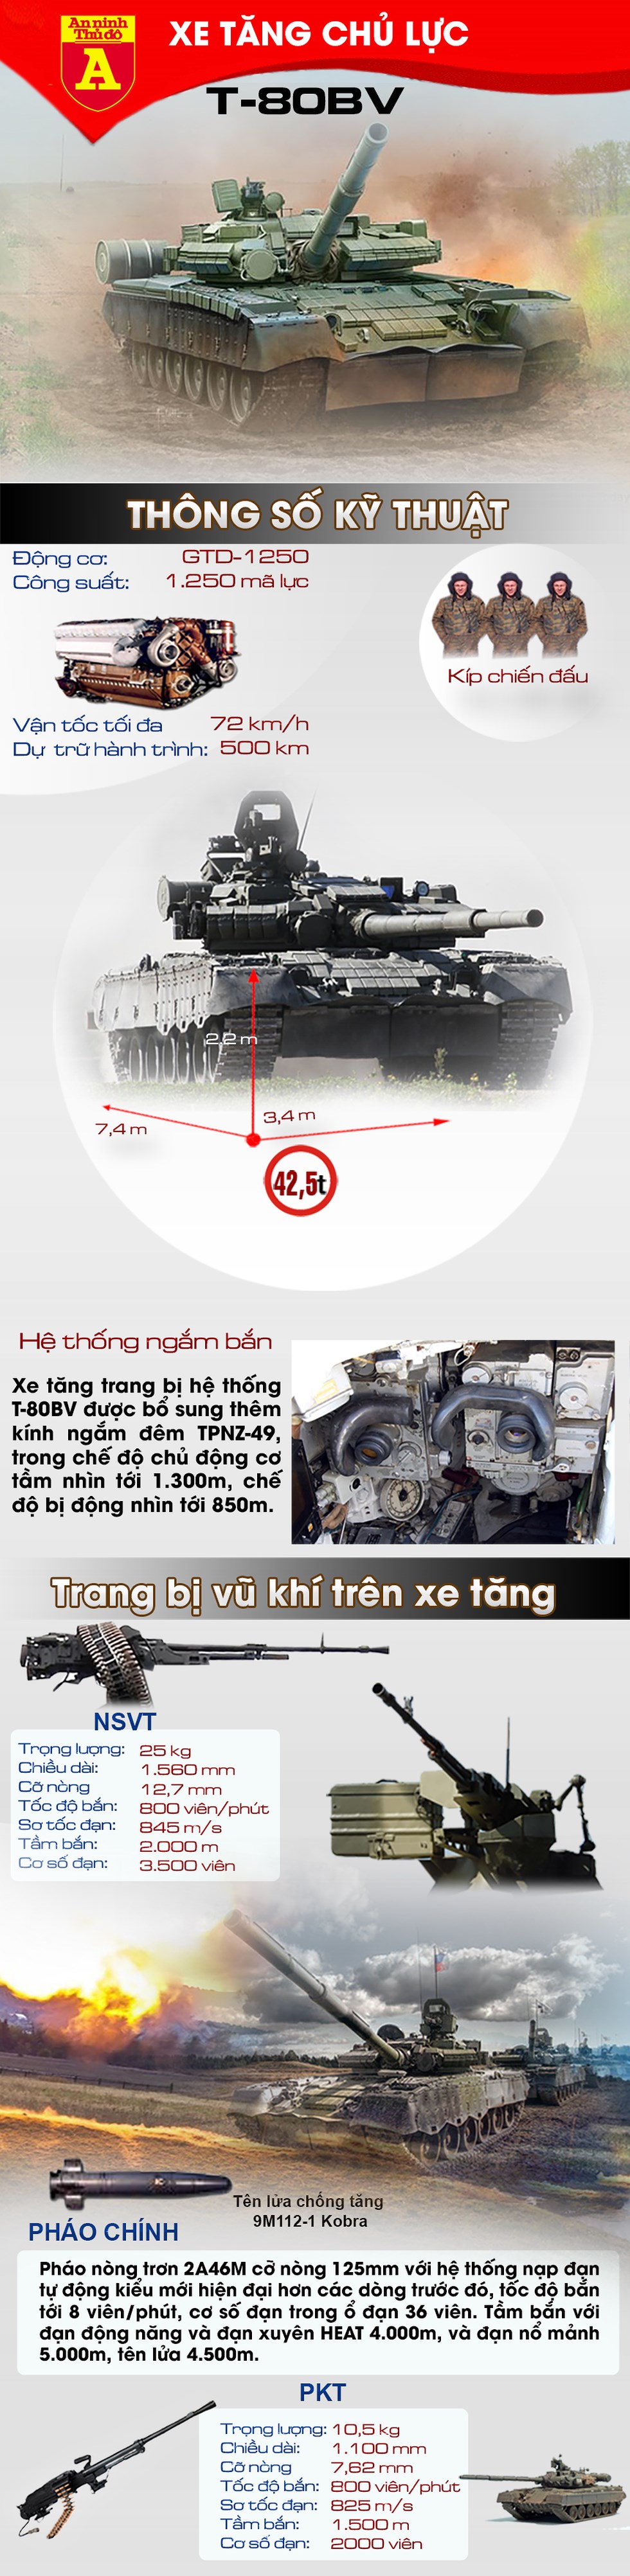 [Infographic] 40 "xe tăng bay" T-80BV của Nga tới trấn giữ vùng Viễn Đông - Ảnh 1